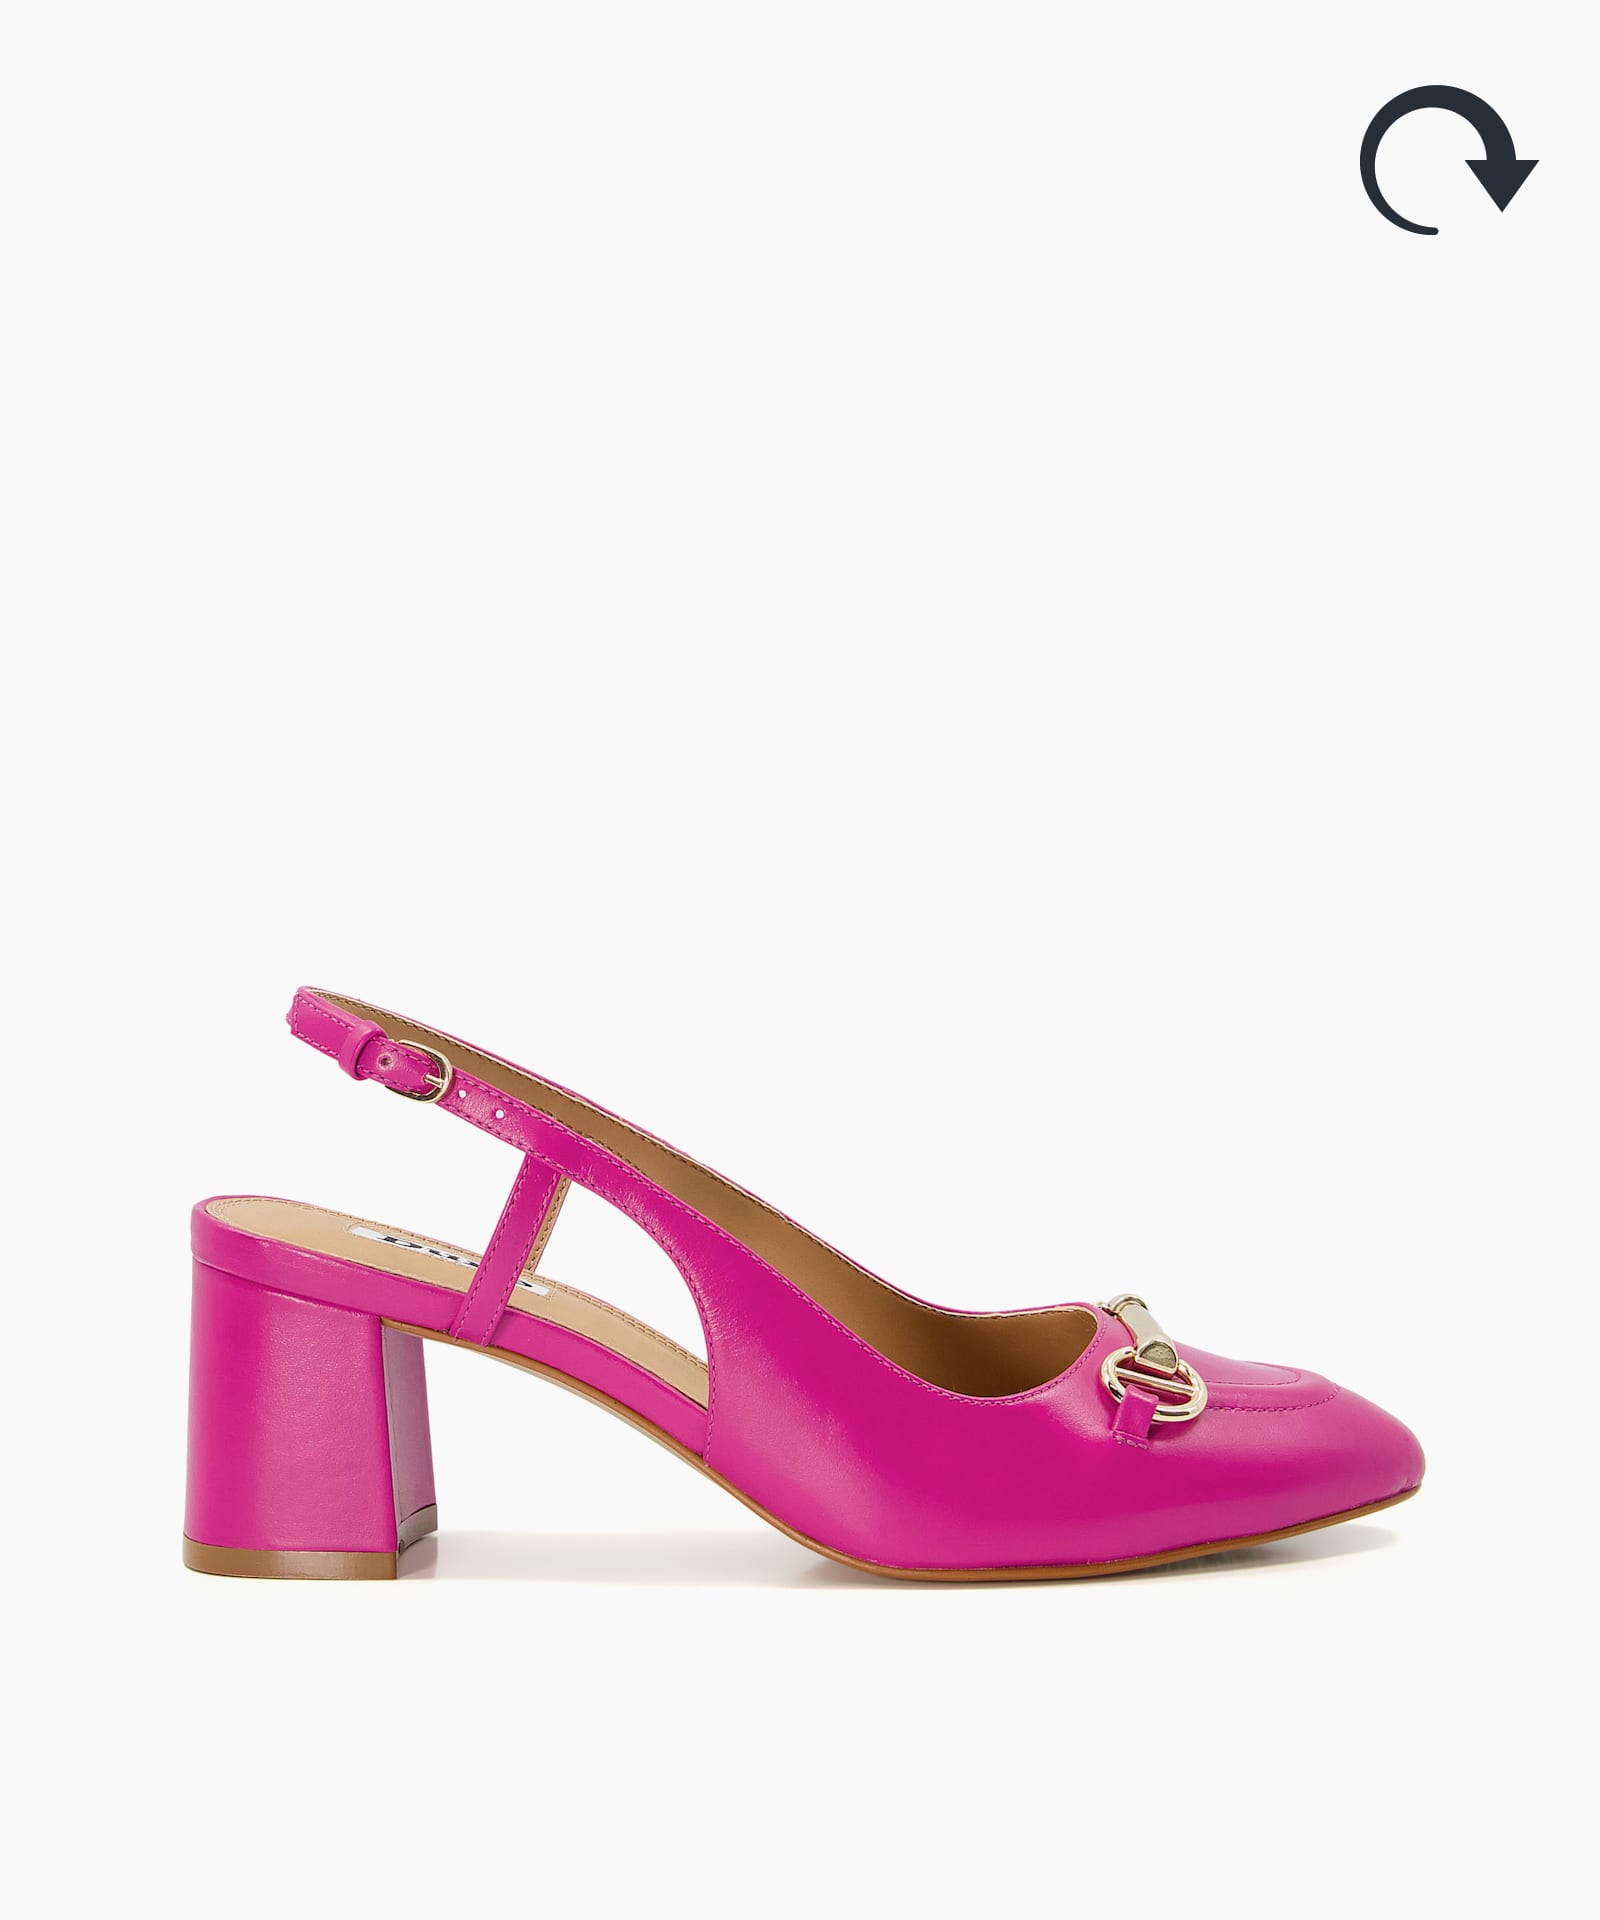 Zara Pink Shoes | lupon.gov.ph